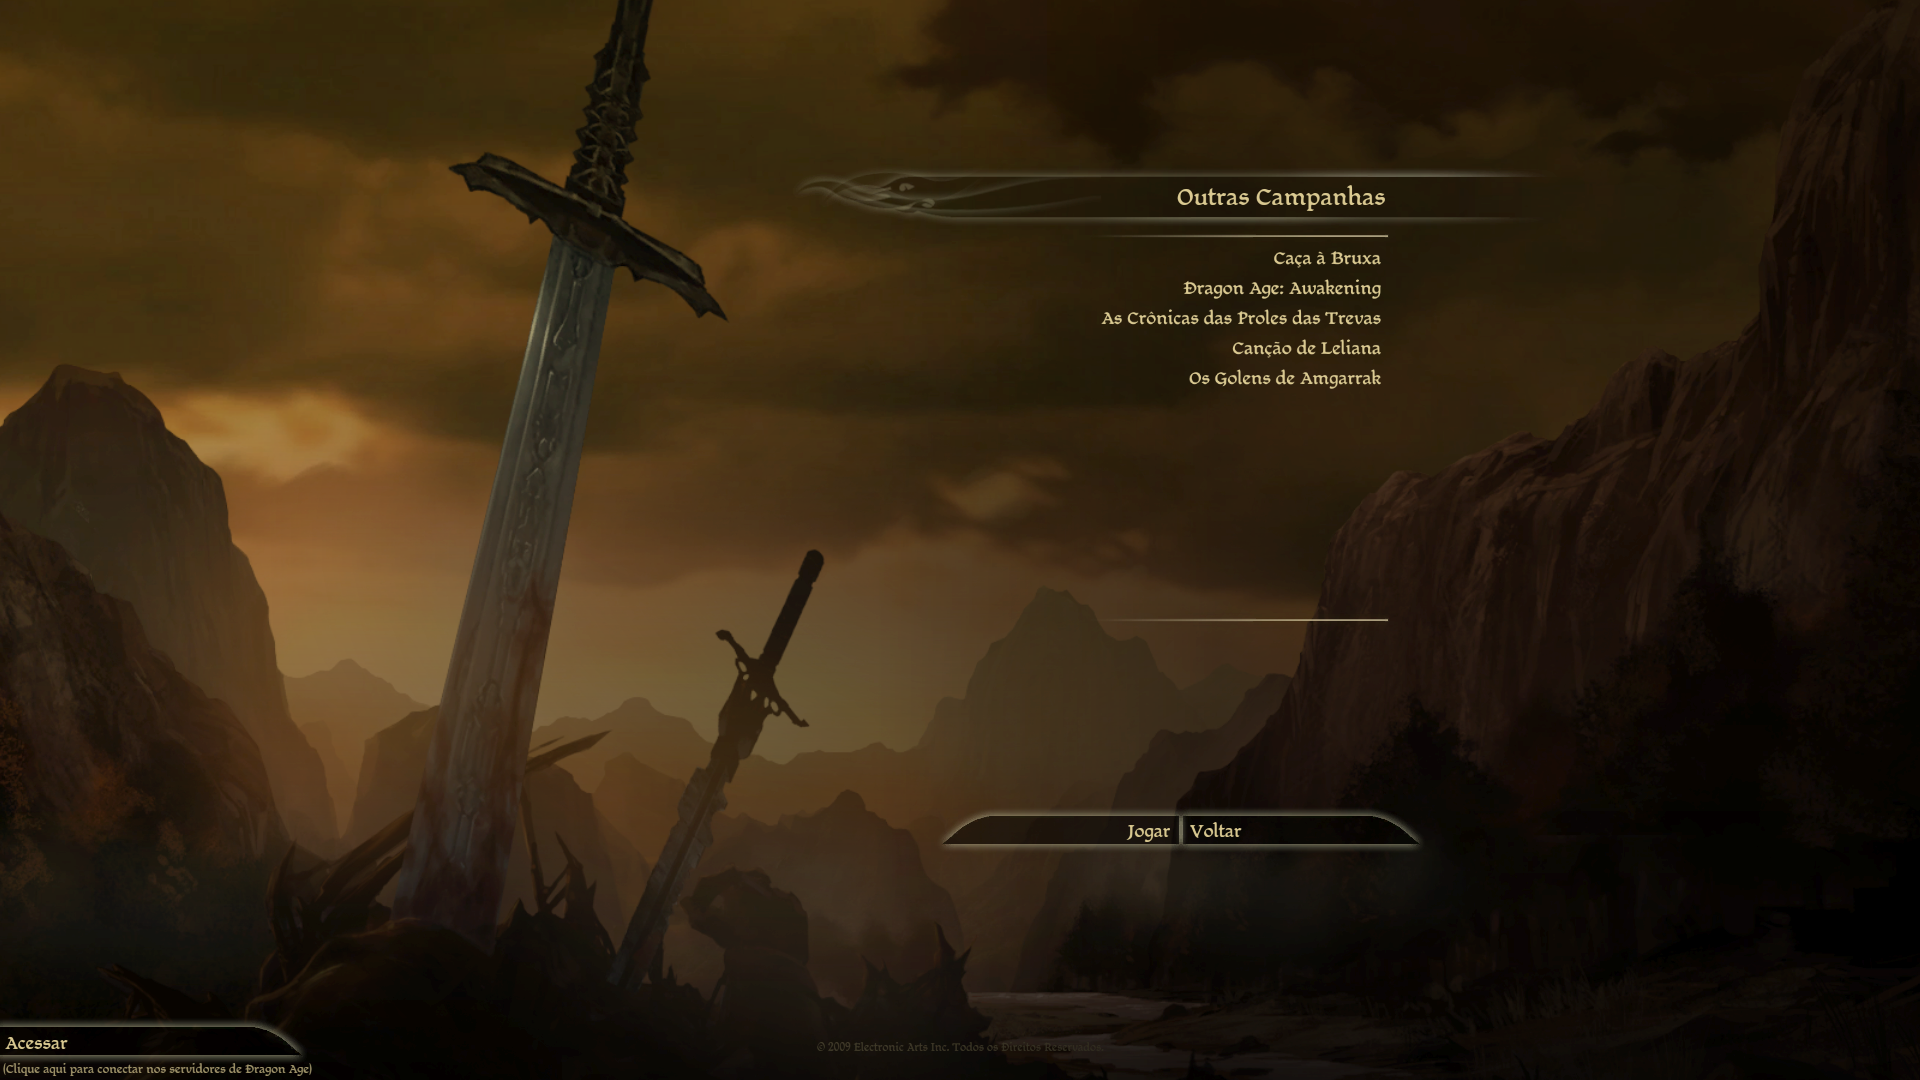 Tradução para Dragon Age: Origins Download